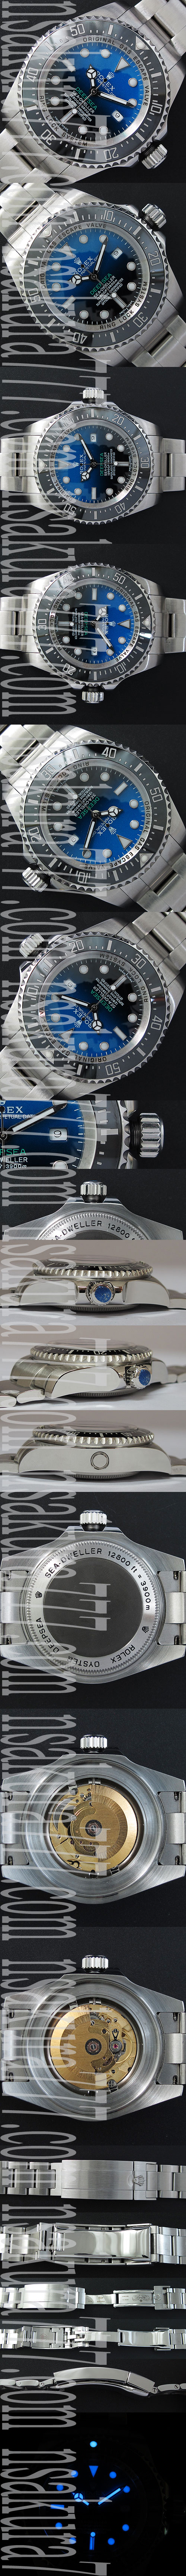 スーパーコピー時計ロレックス シードゥエラーディープシー Swiss 2836-2 ハイエンドモデル - ウインドウを閉じる